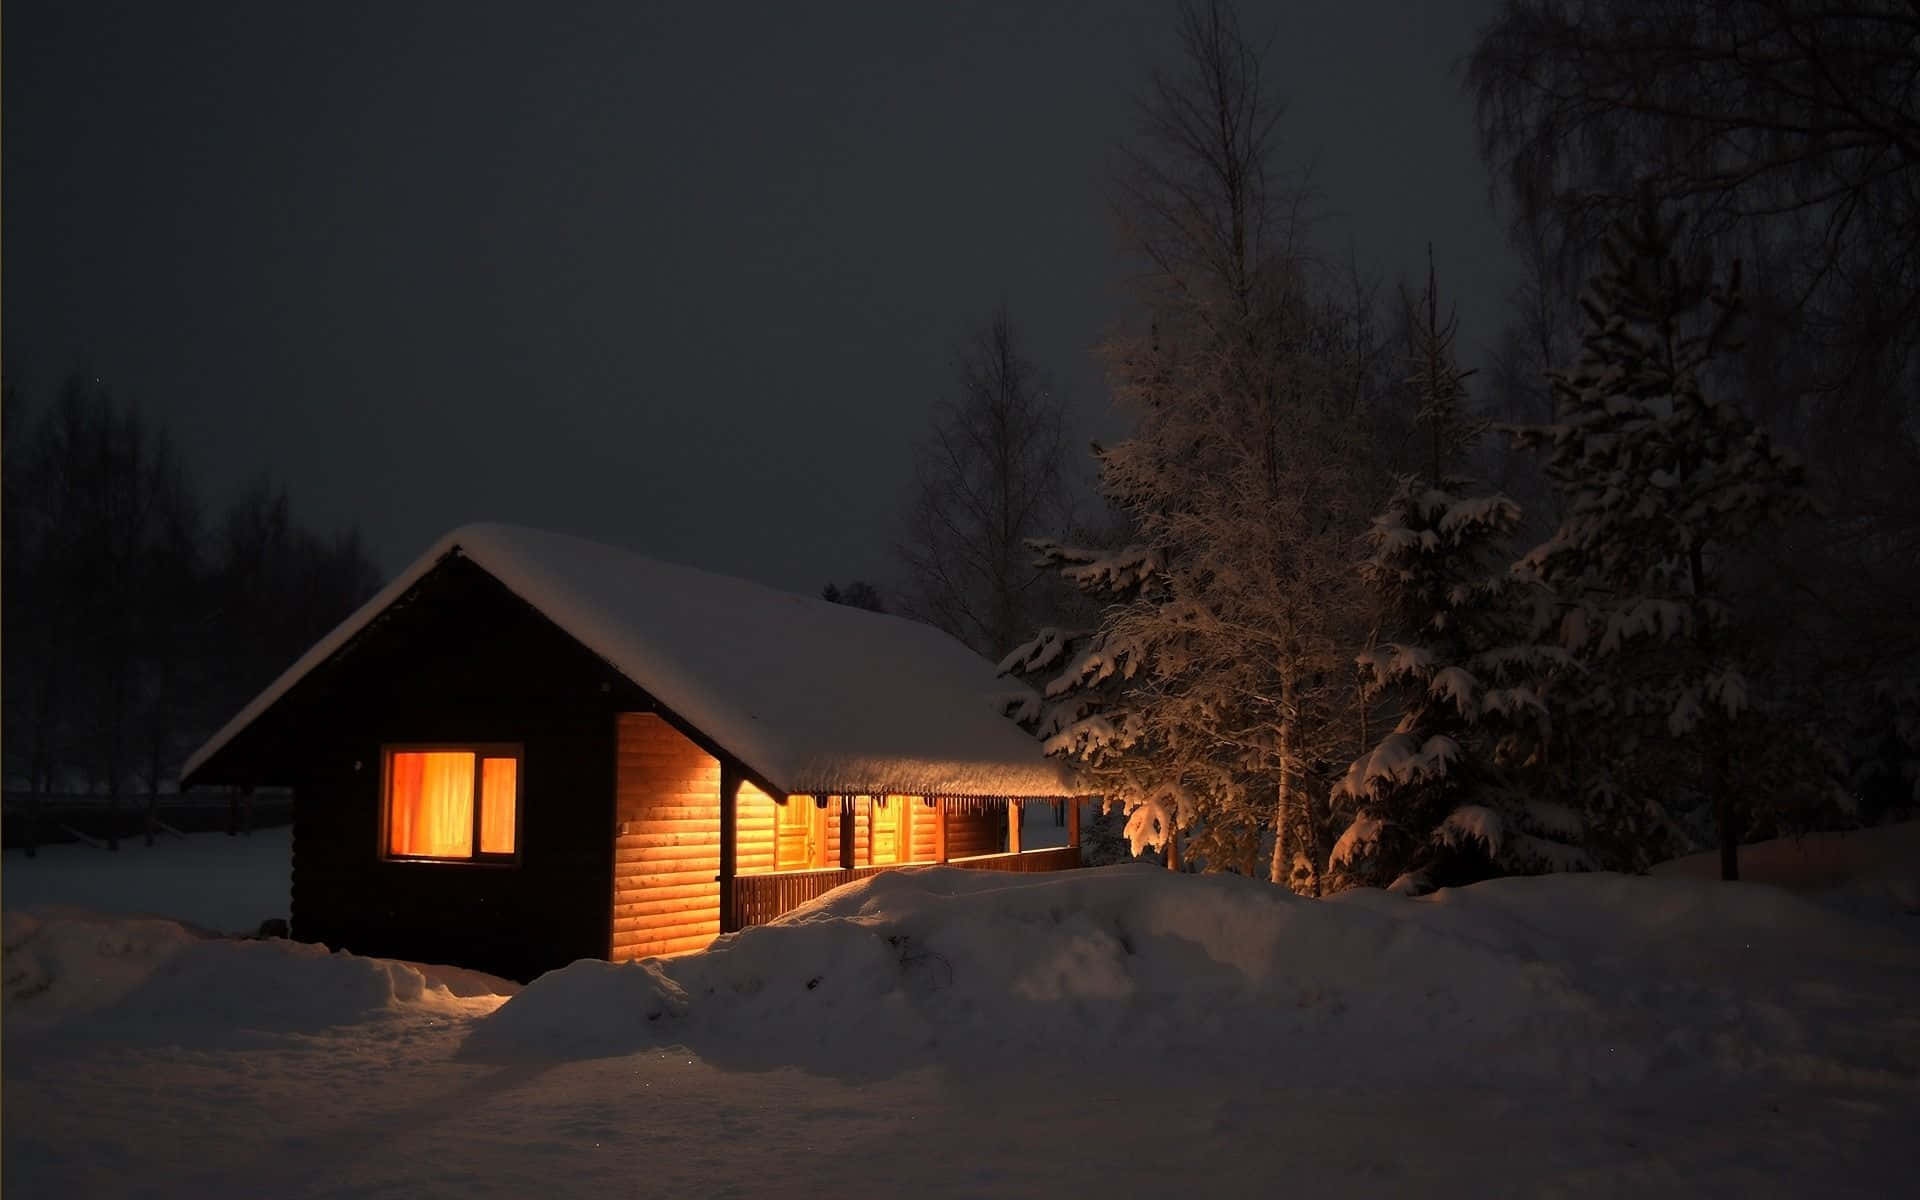 Umapequena Cabana Iluminada À Noite Na Neve. Papel de Parede